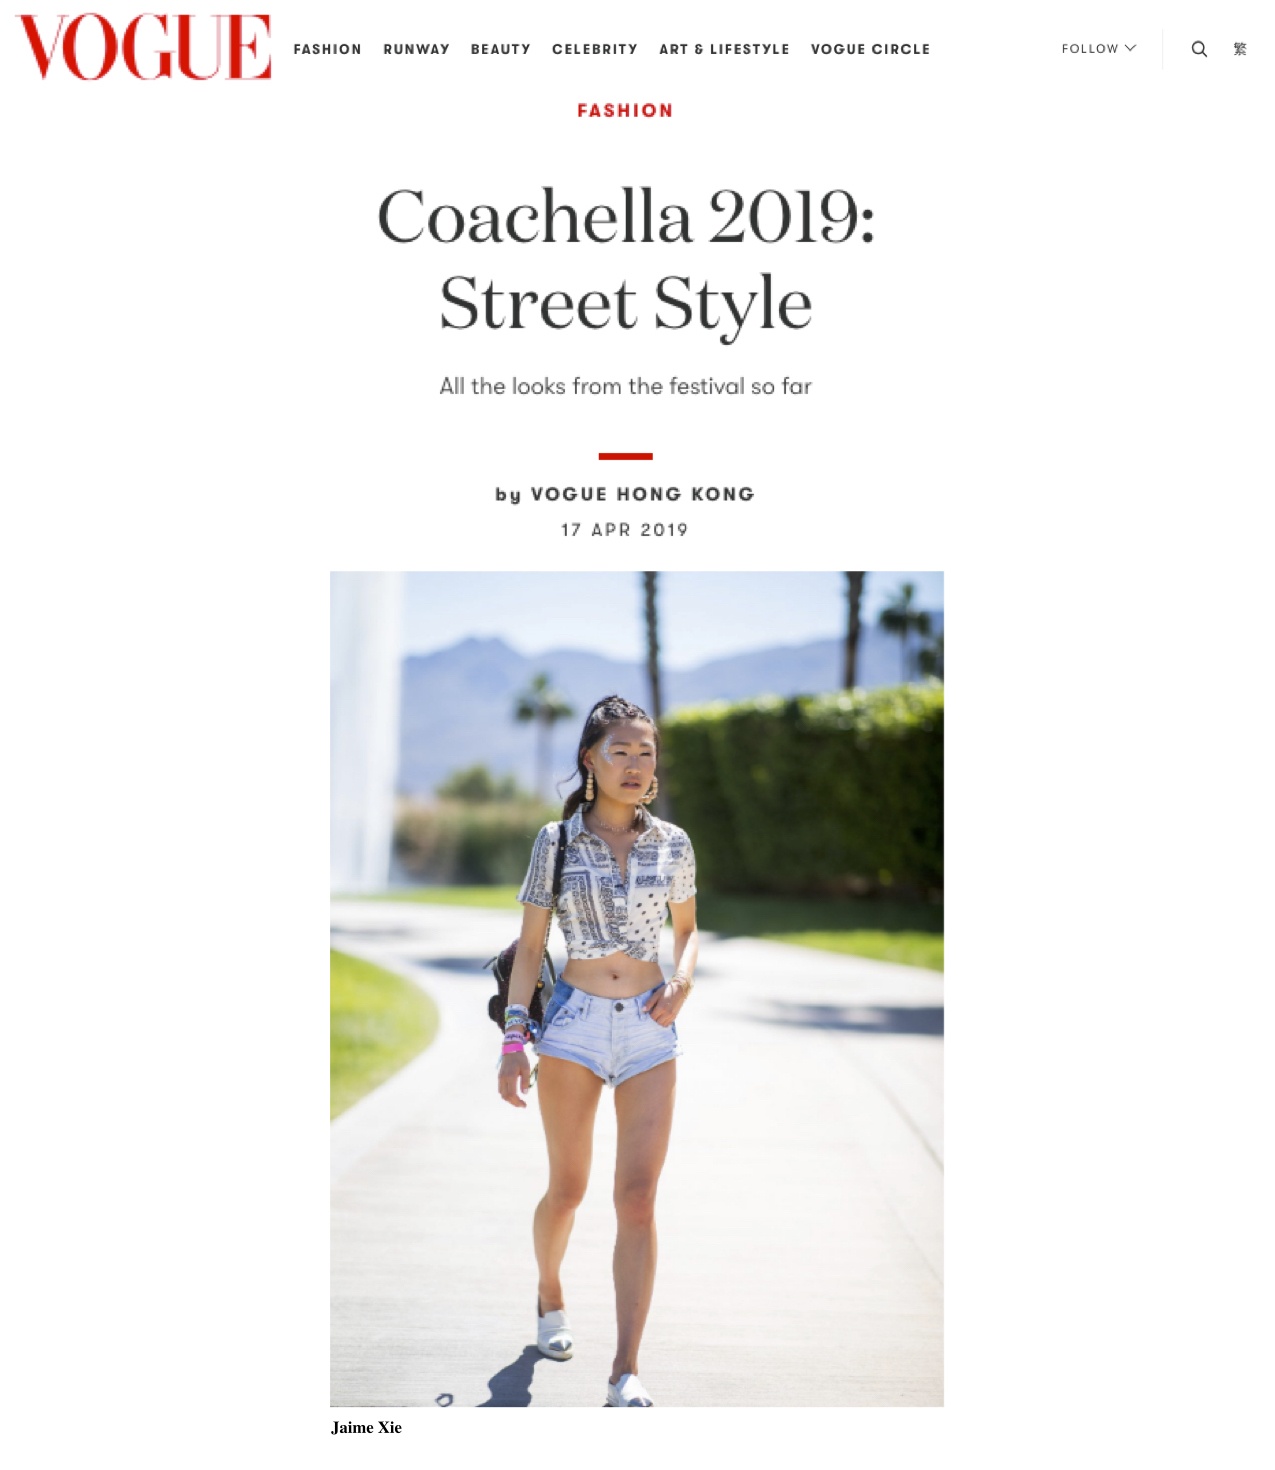 Vogue Hong Kong: Coachella 2019 Street Style